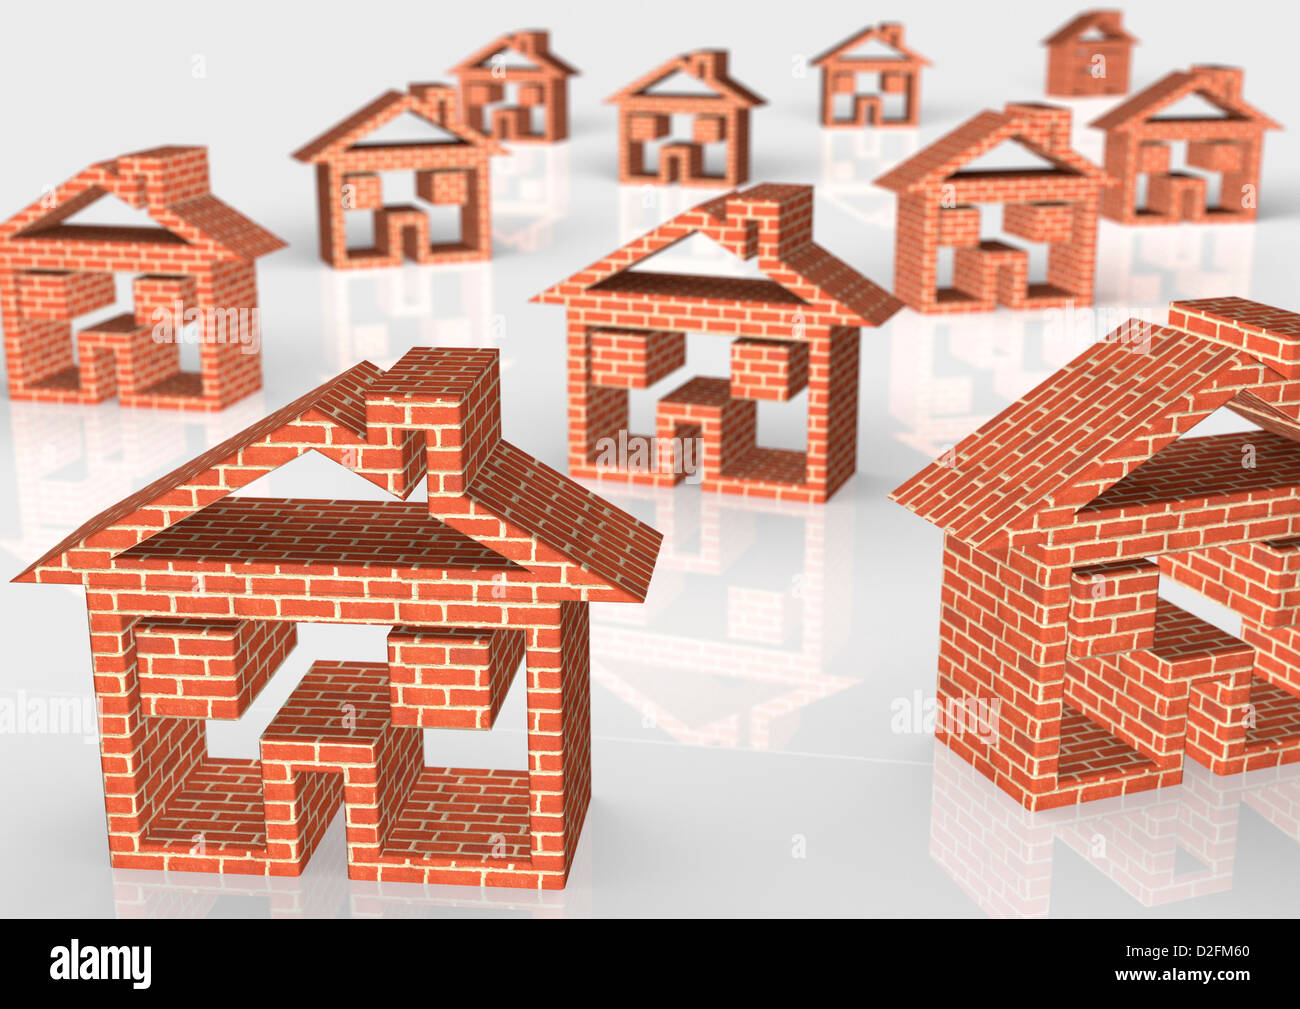 Ziegel-Haussymbole auf weißem Hintergrund - Wohnungsmarkt / Baukonzept Stockfoto